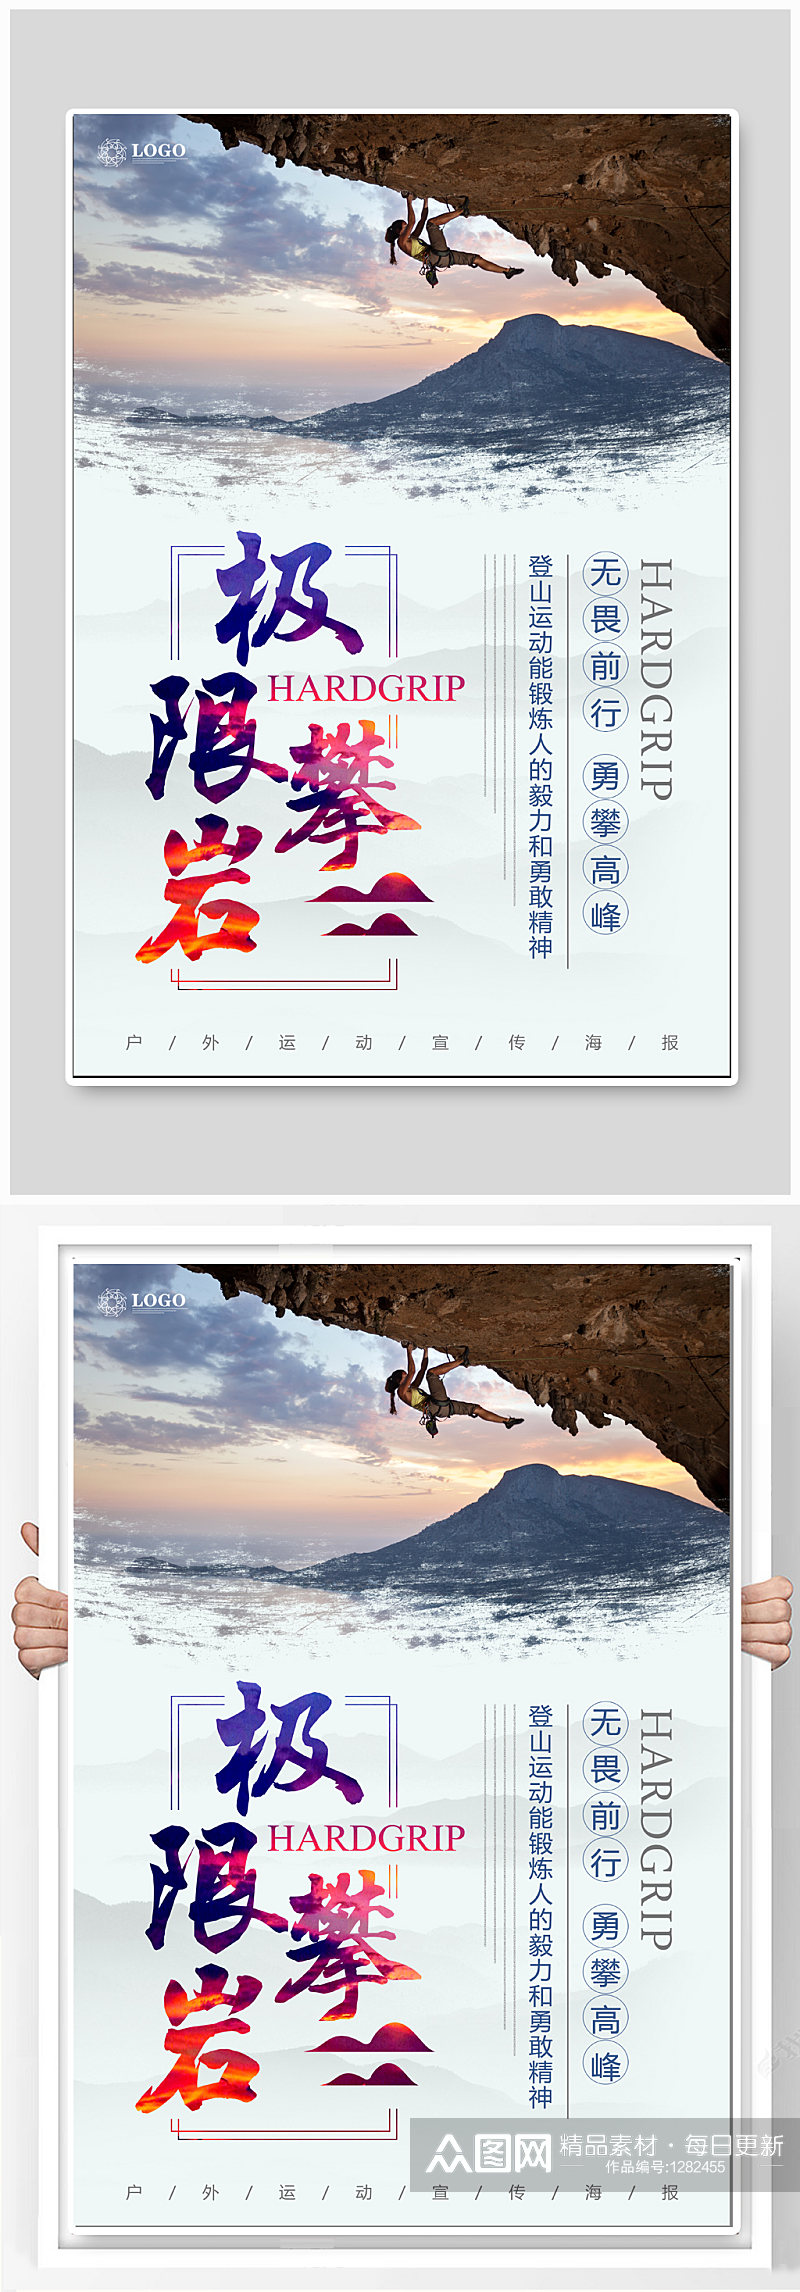 极限攀岩运动海报 攀登者宣传海报素材